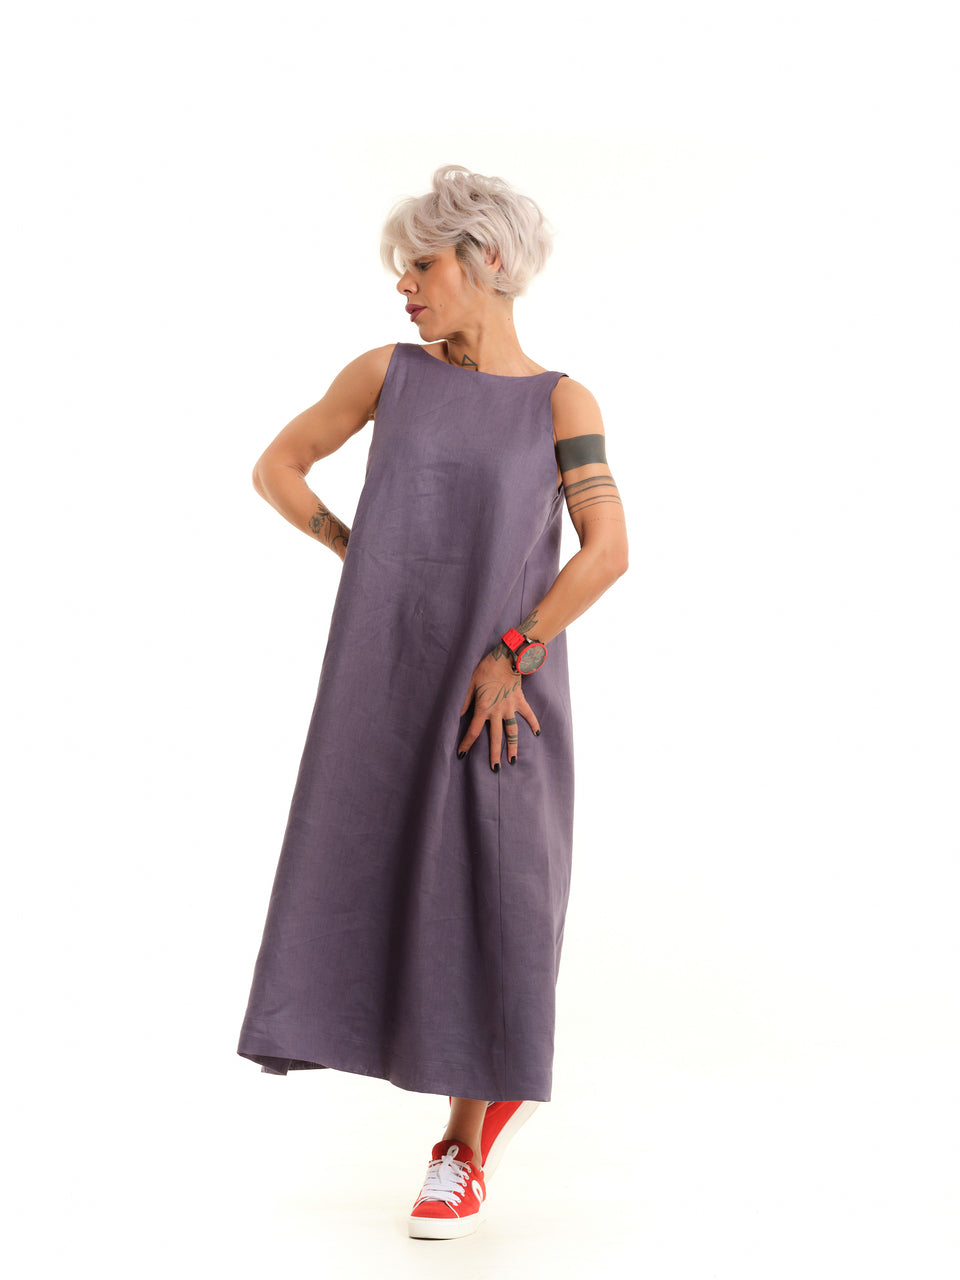 Clothe by Locker Room Mauve Open-Back Linen Dress 2XL/3XL